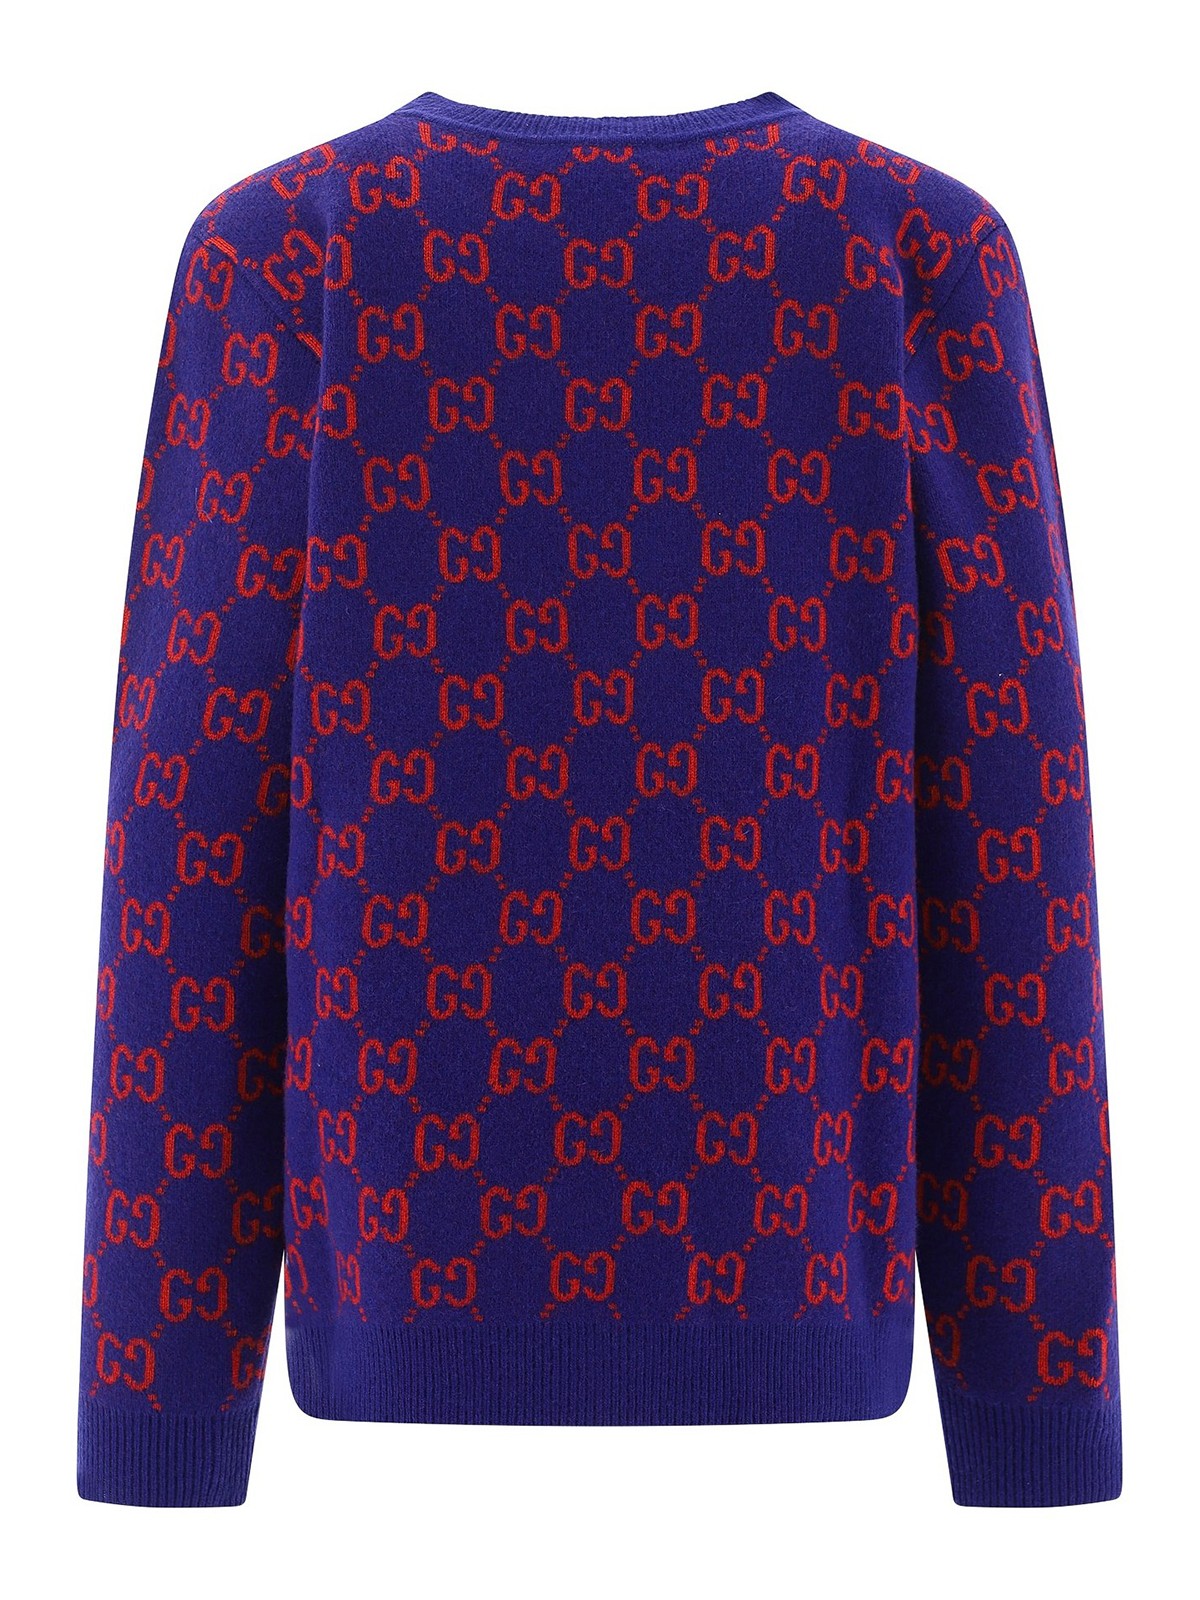 purple gucci sweater